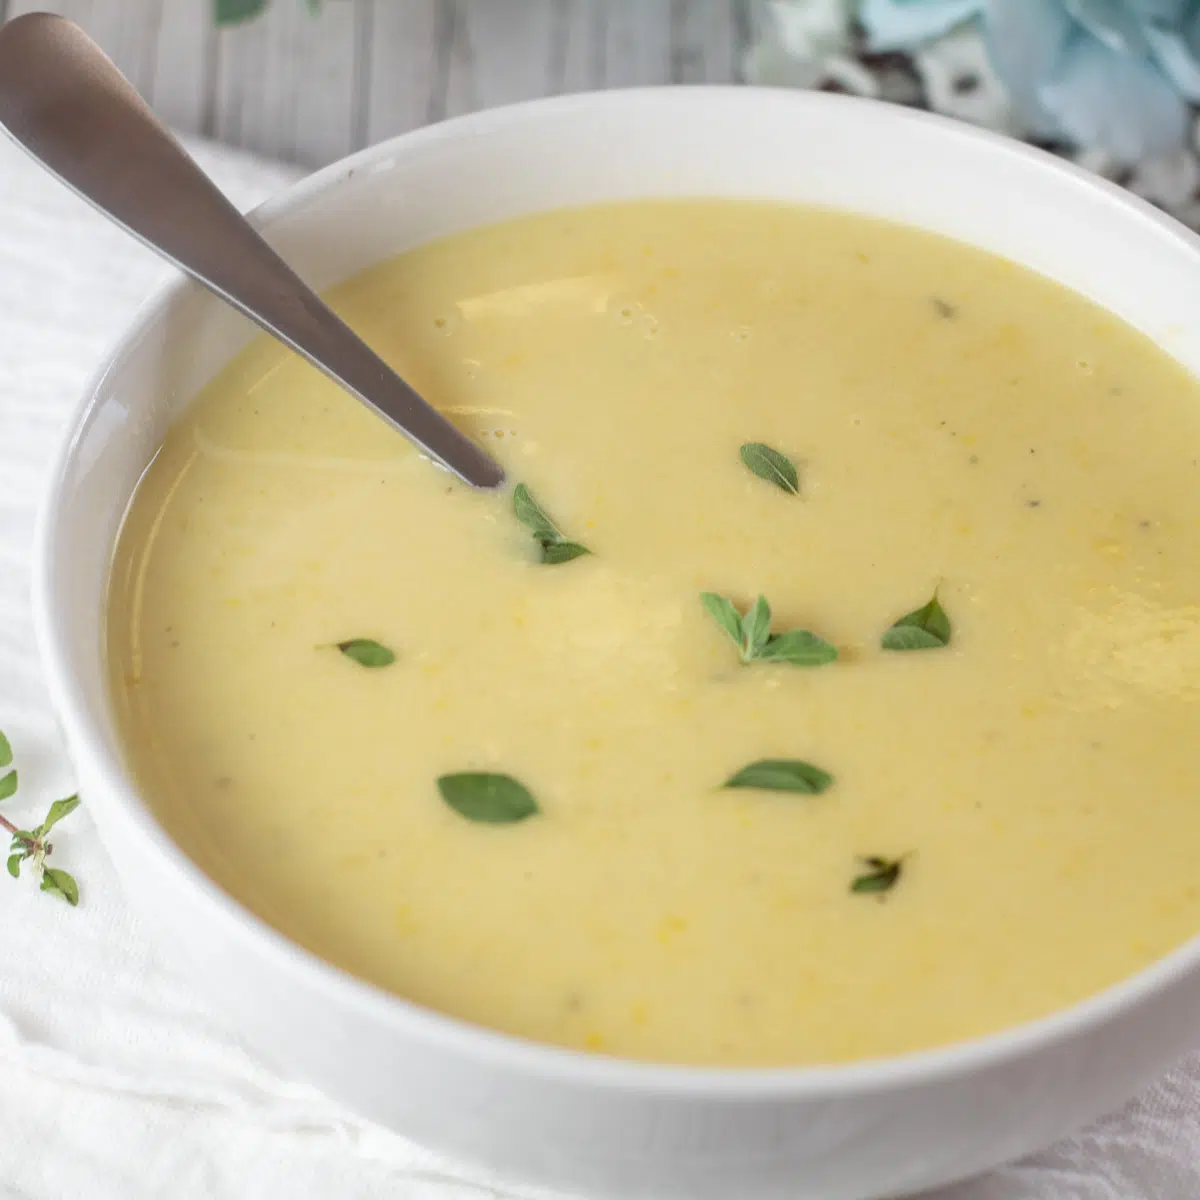 Квадратное изображение сливочно-желтого супа из тыквы в белой миске.